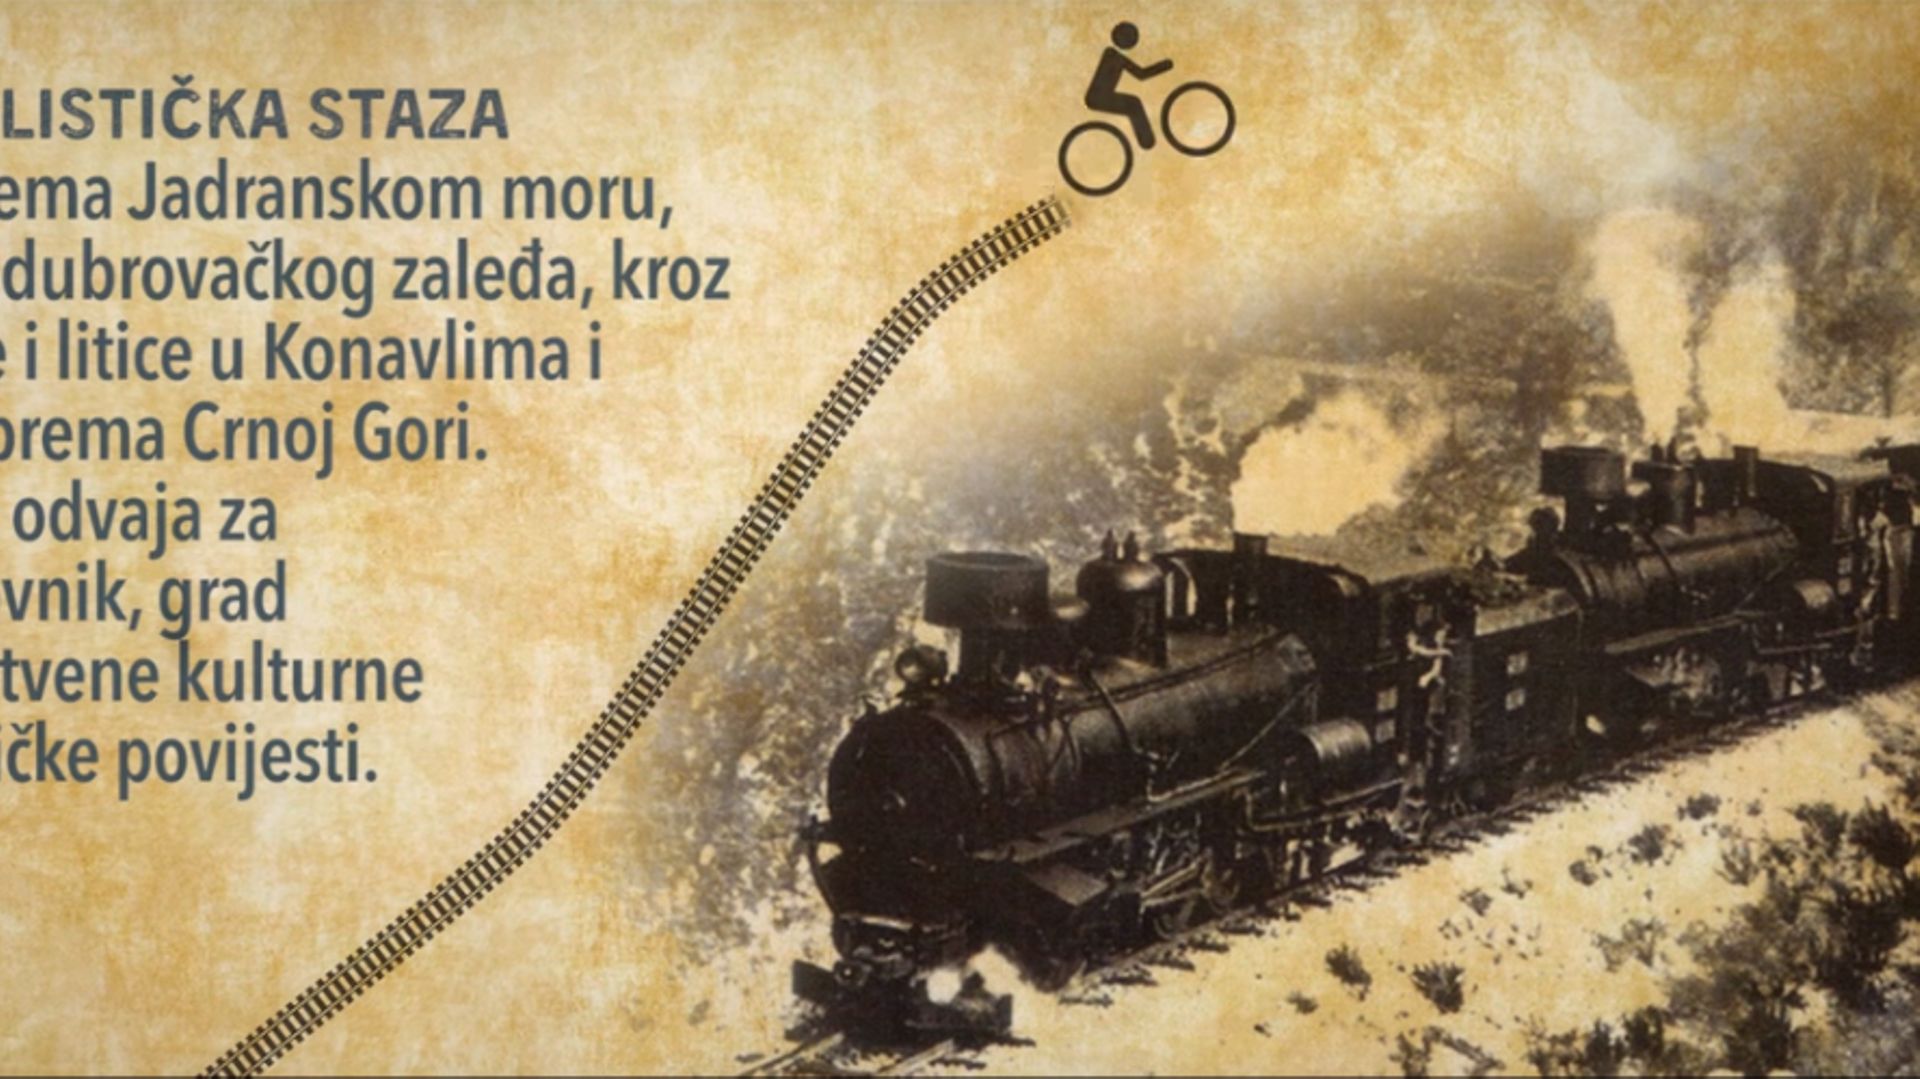 Vidéo promotionnelle du Chiro, le tour à vélo à travers les balkans